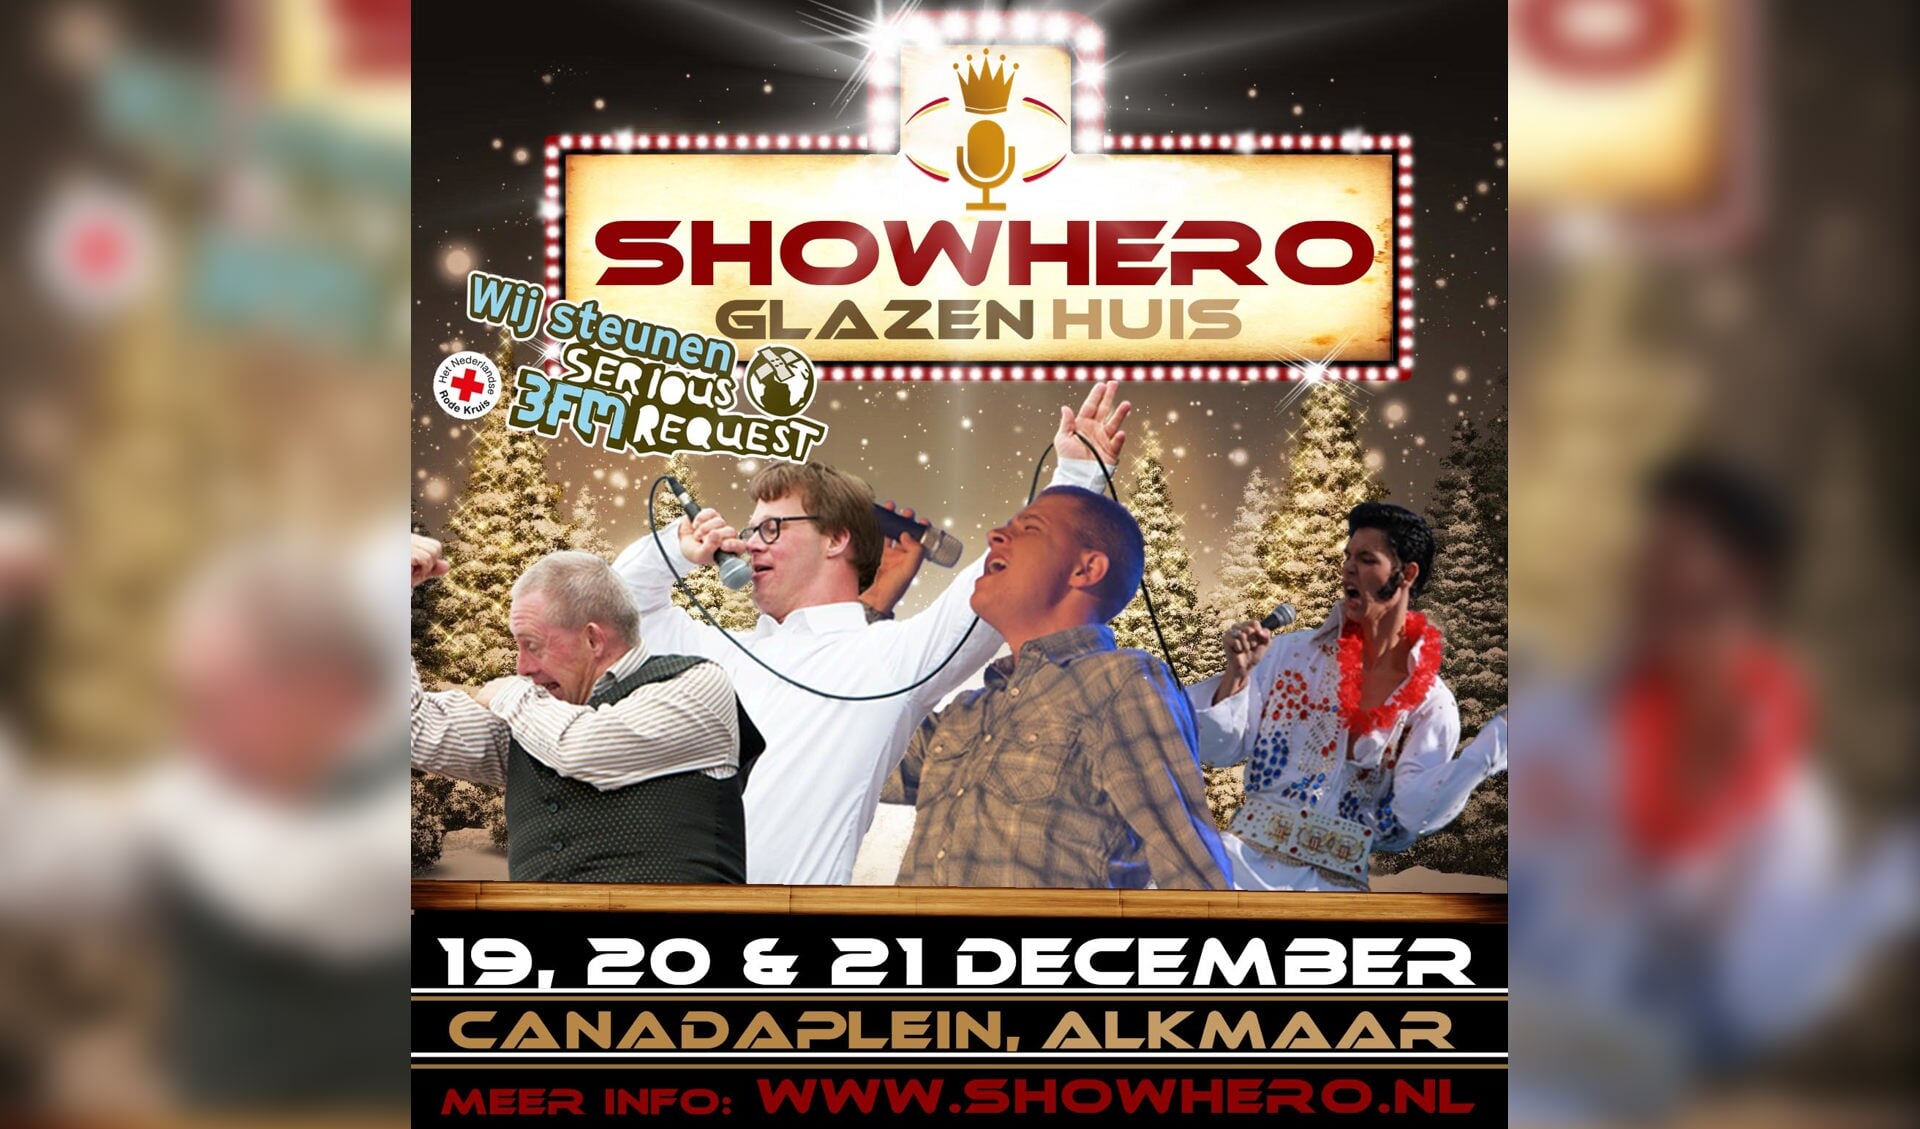 Stichting Showhero zet op 19, 20 en 21 december in Alkmaar het 'Showhero Glazen Huis' neer, om geld op te halen voor Serious Request